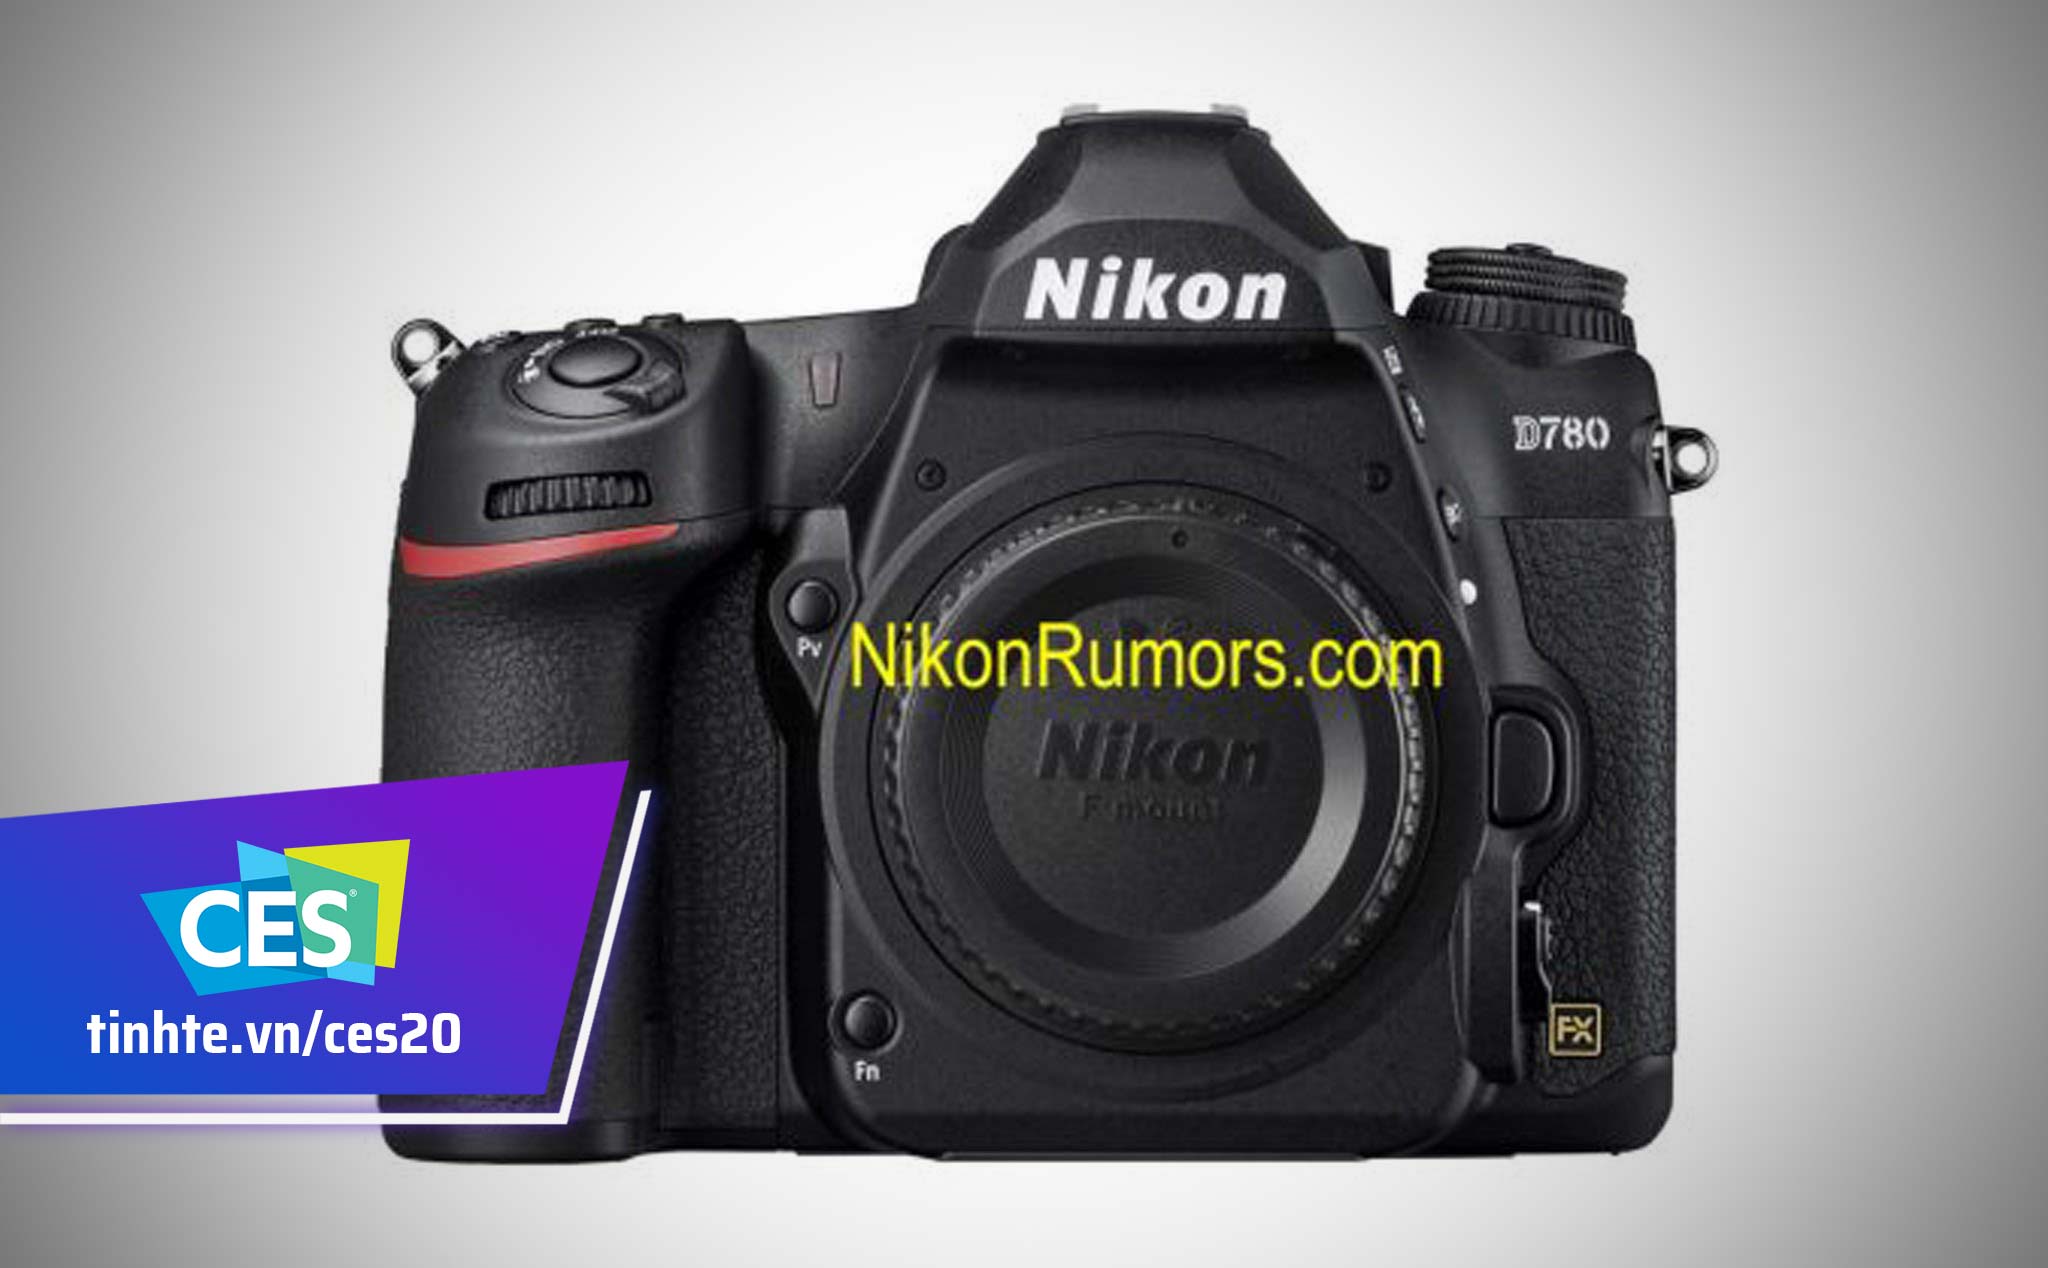 #CES20: Rò rỉ hình ảnh Nikon D780 sẽ ra mắt